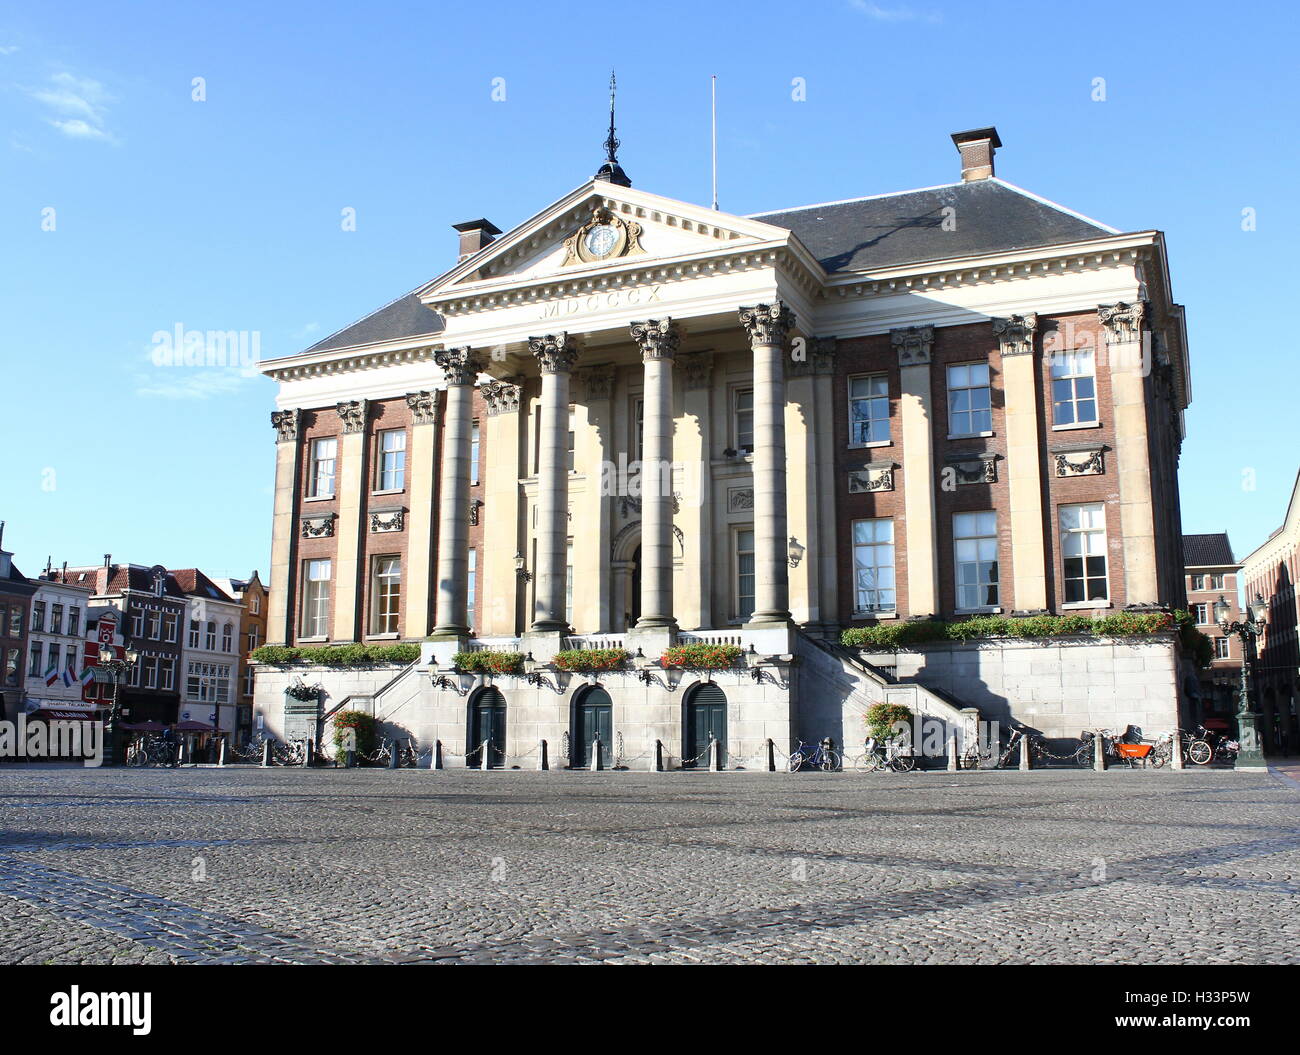 Au début du 18ème siècle l'hôtel de ville (Stadhuis) sur Grote Markt (Grand Place) dans le centre historique de Groningen, Pays-Bas Banque D'Images